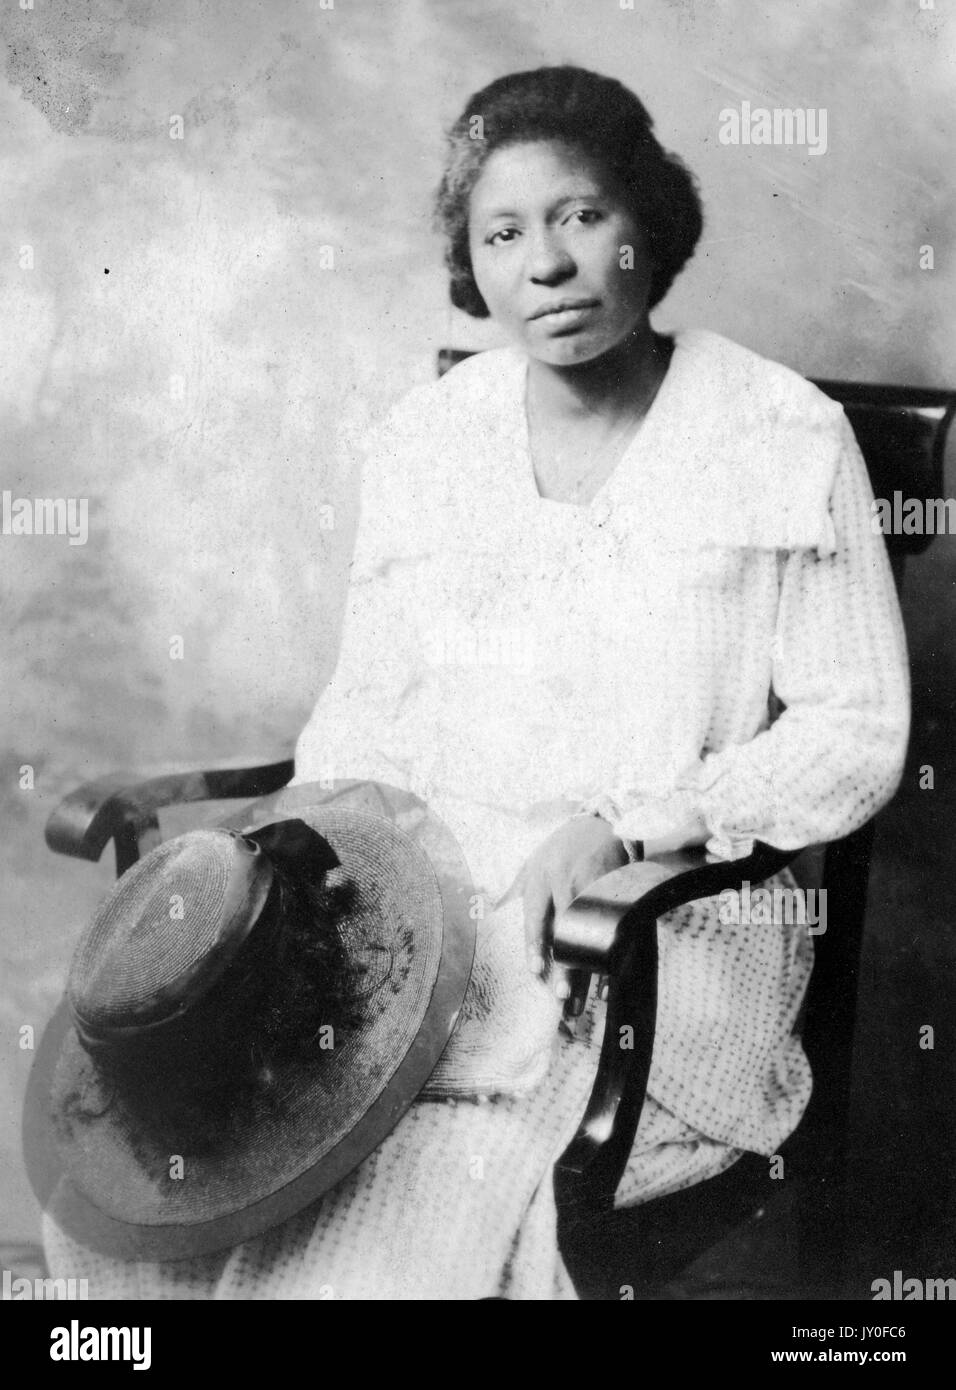 Ritratto di donna afro-americana con un'espressione neutra di tre quarti di lunghezza davanti a uno sfondo dipinto, con un cappello in grembo e un abito leggermente colorato, 1920. Foto Stock